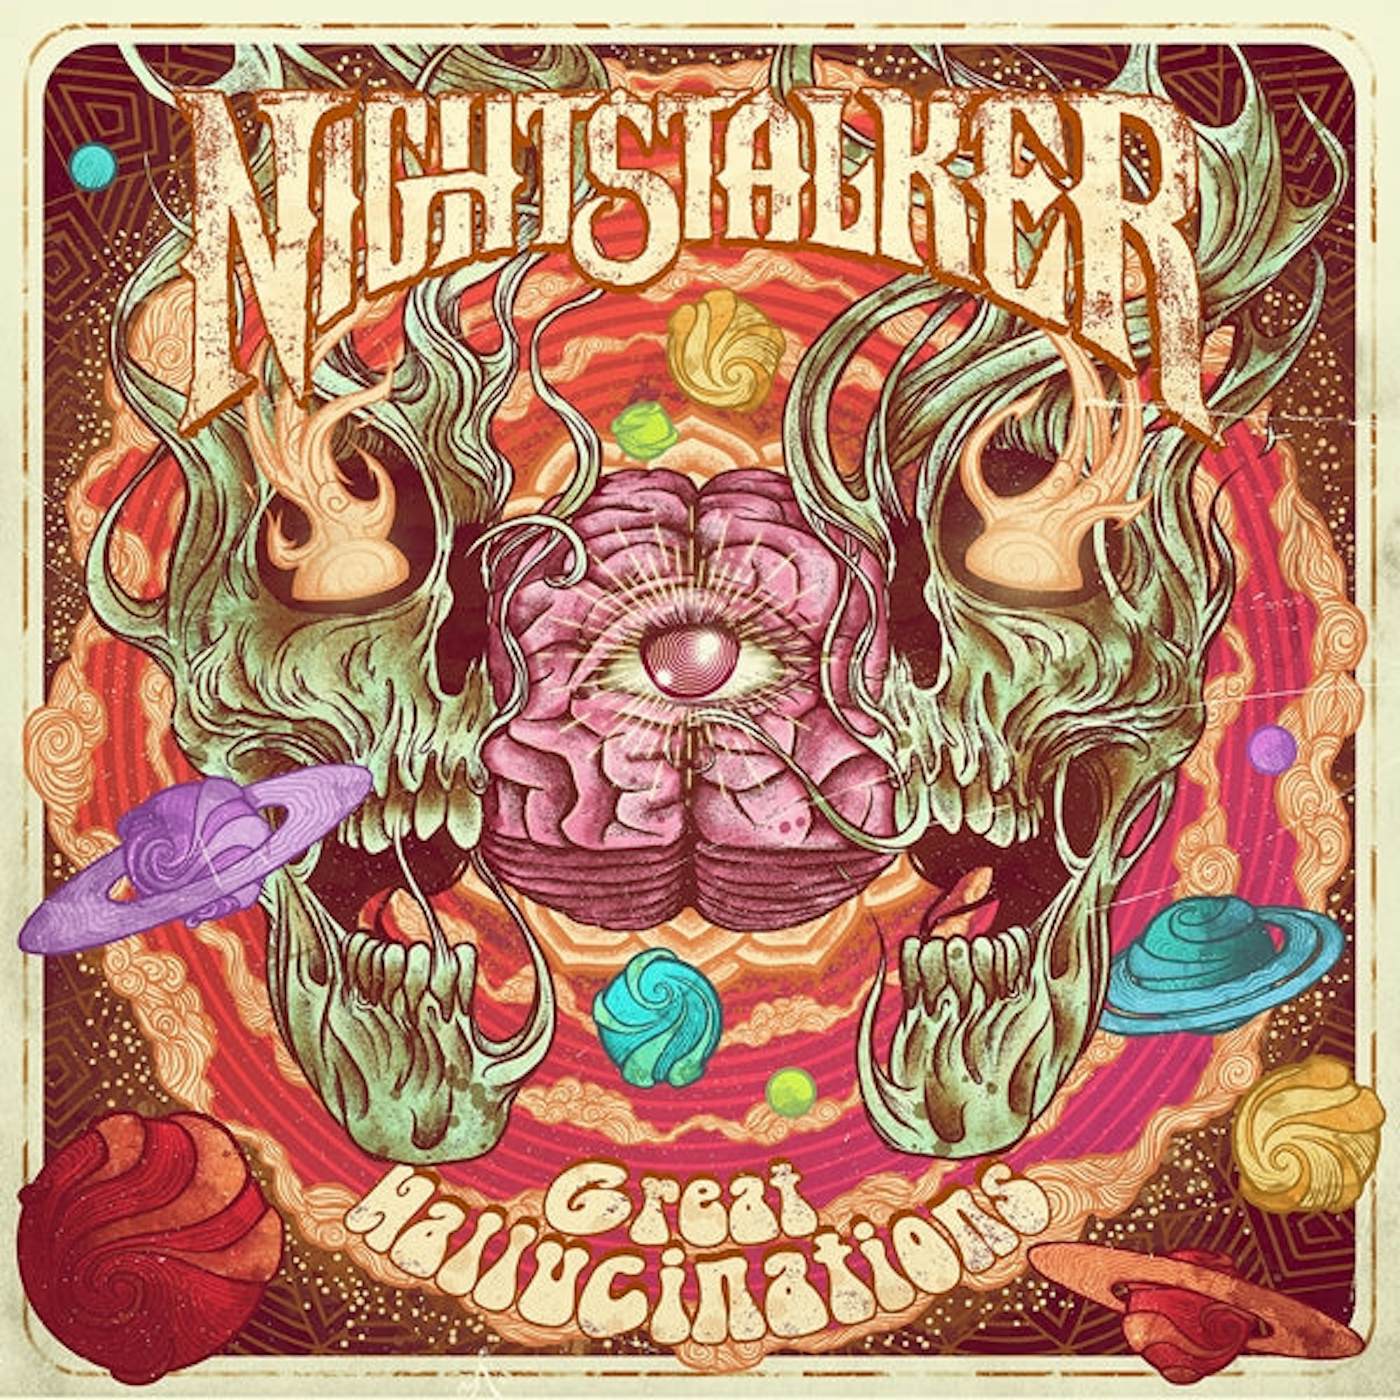 Nightstalker LP - Great Hallucinations (Coloured Vinyl)